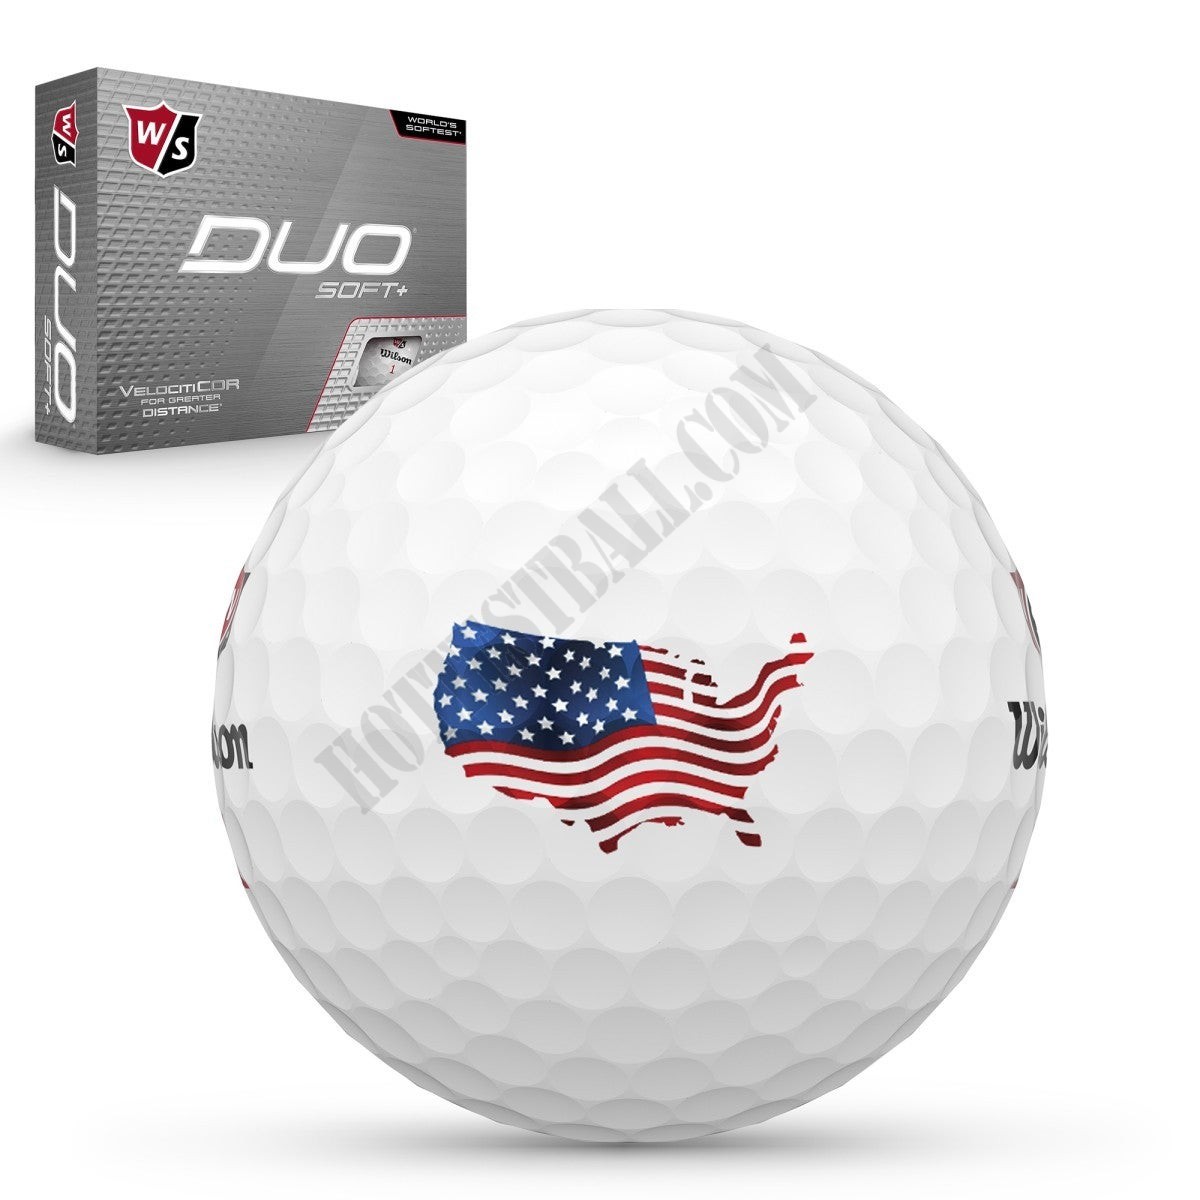 DUO Soft+ USA Golf Balls - Wilson Discount Store - DUO Soft+ USA Golf Balls - Wilson Discount Store